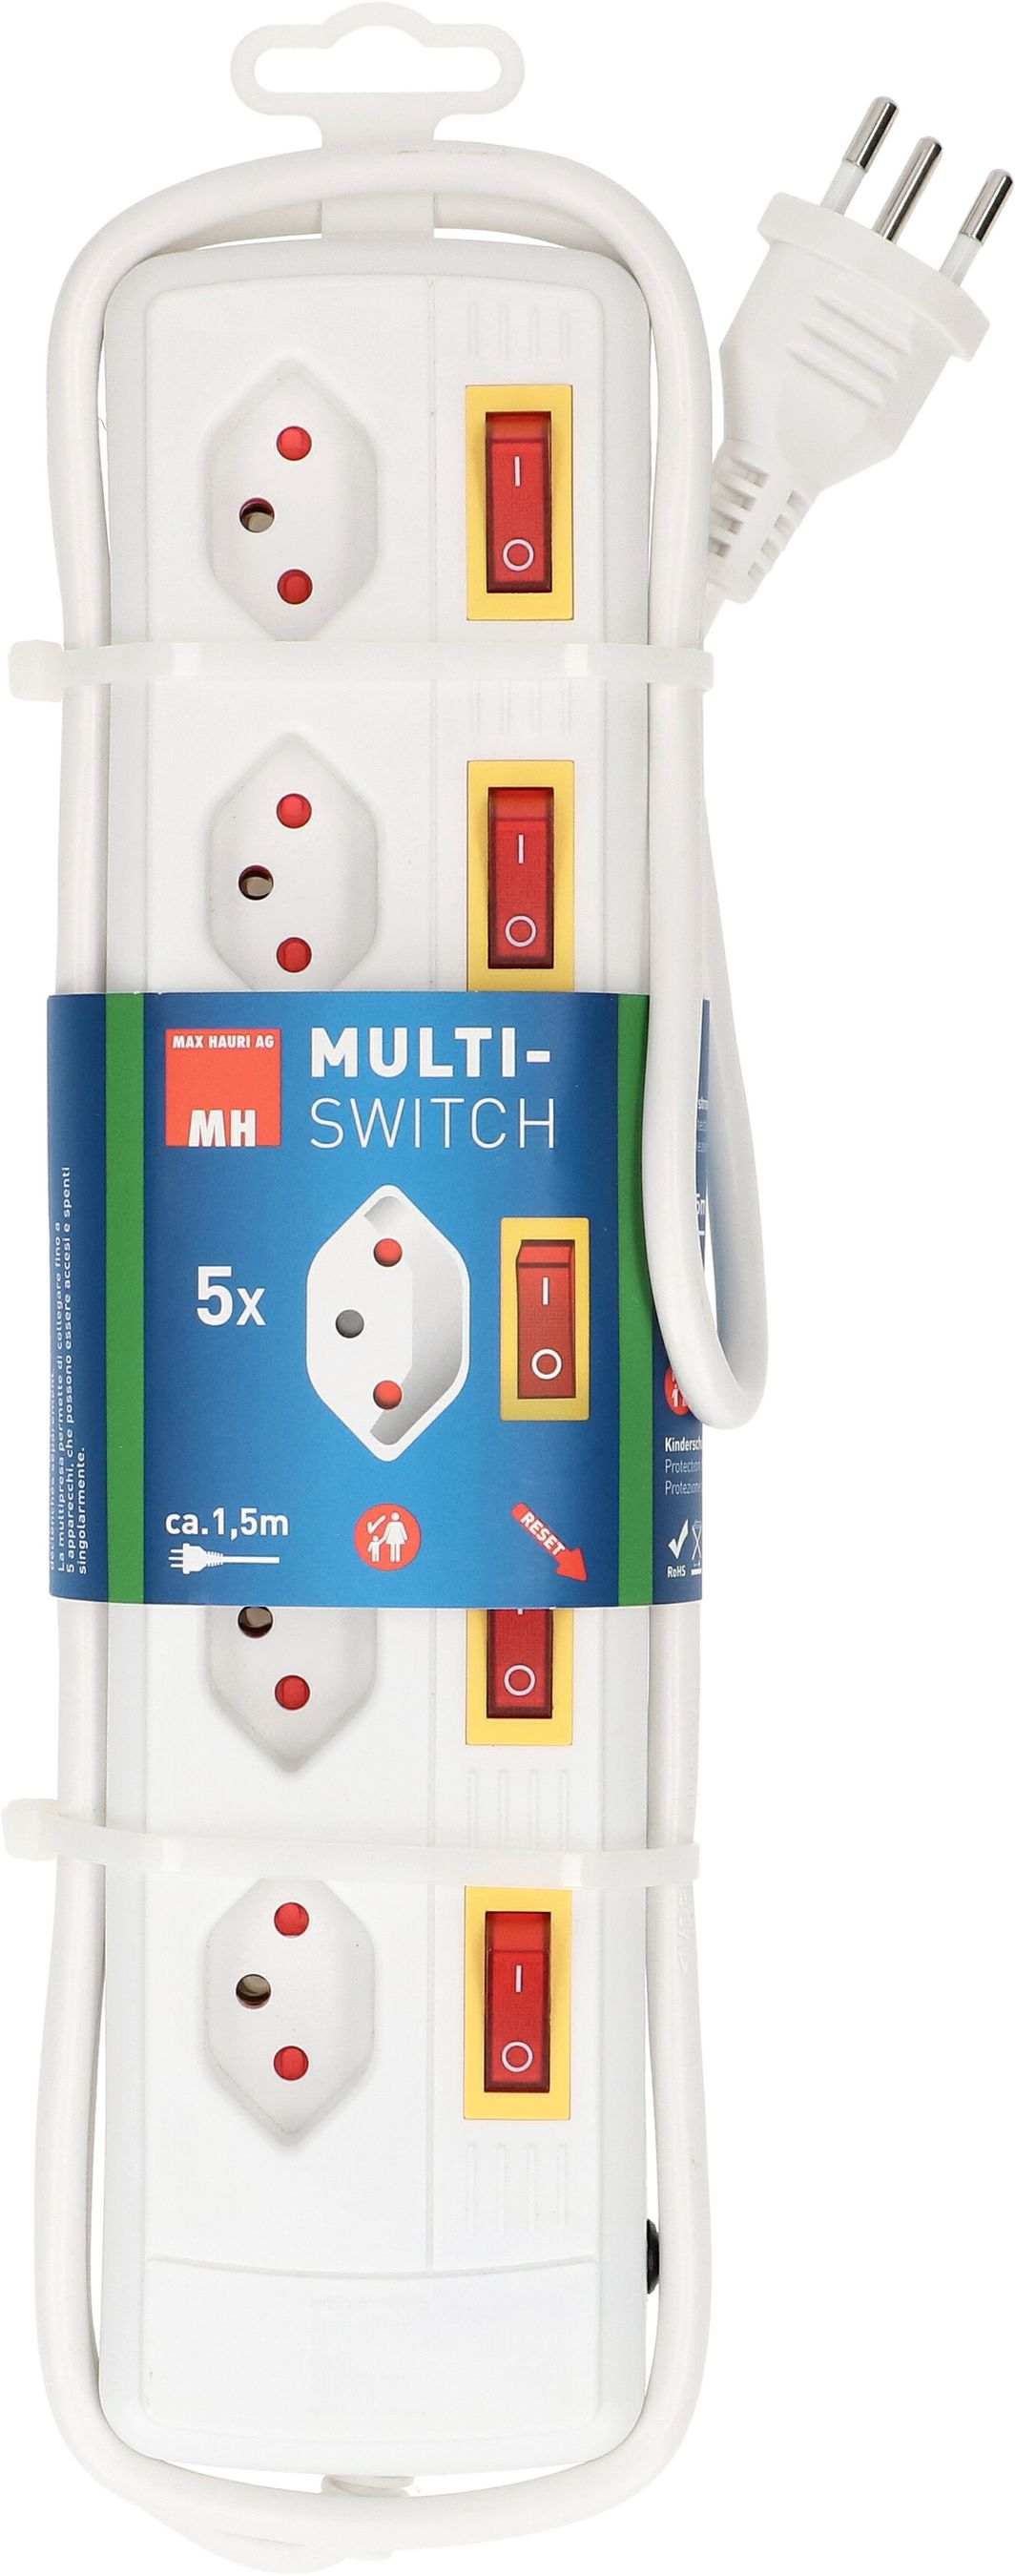 Steckdosenleiste Multi-Switch 5x Typ 13 BS weiss Schalter 1.5m